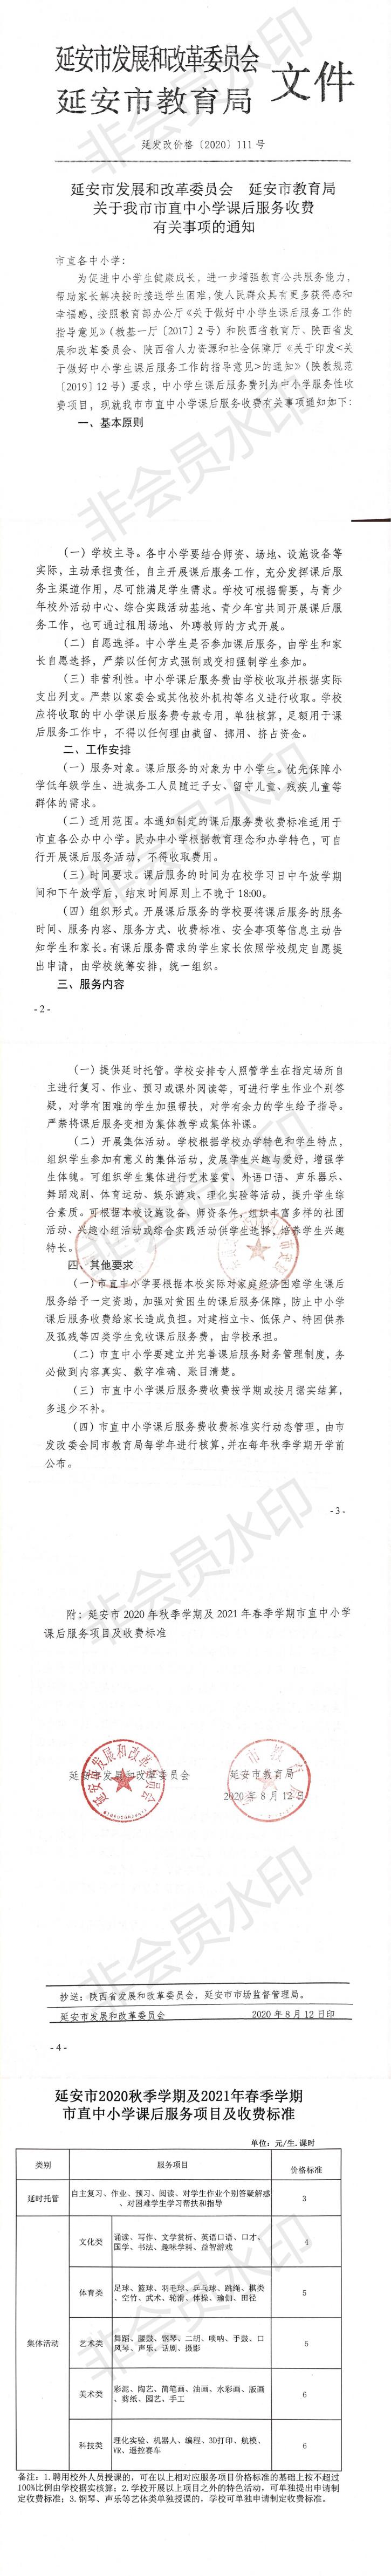 學校(xiào)通知公告欄，2020.8.13，總務處發布_0.jpg